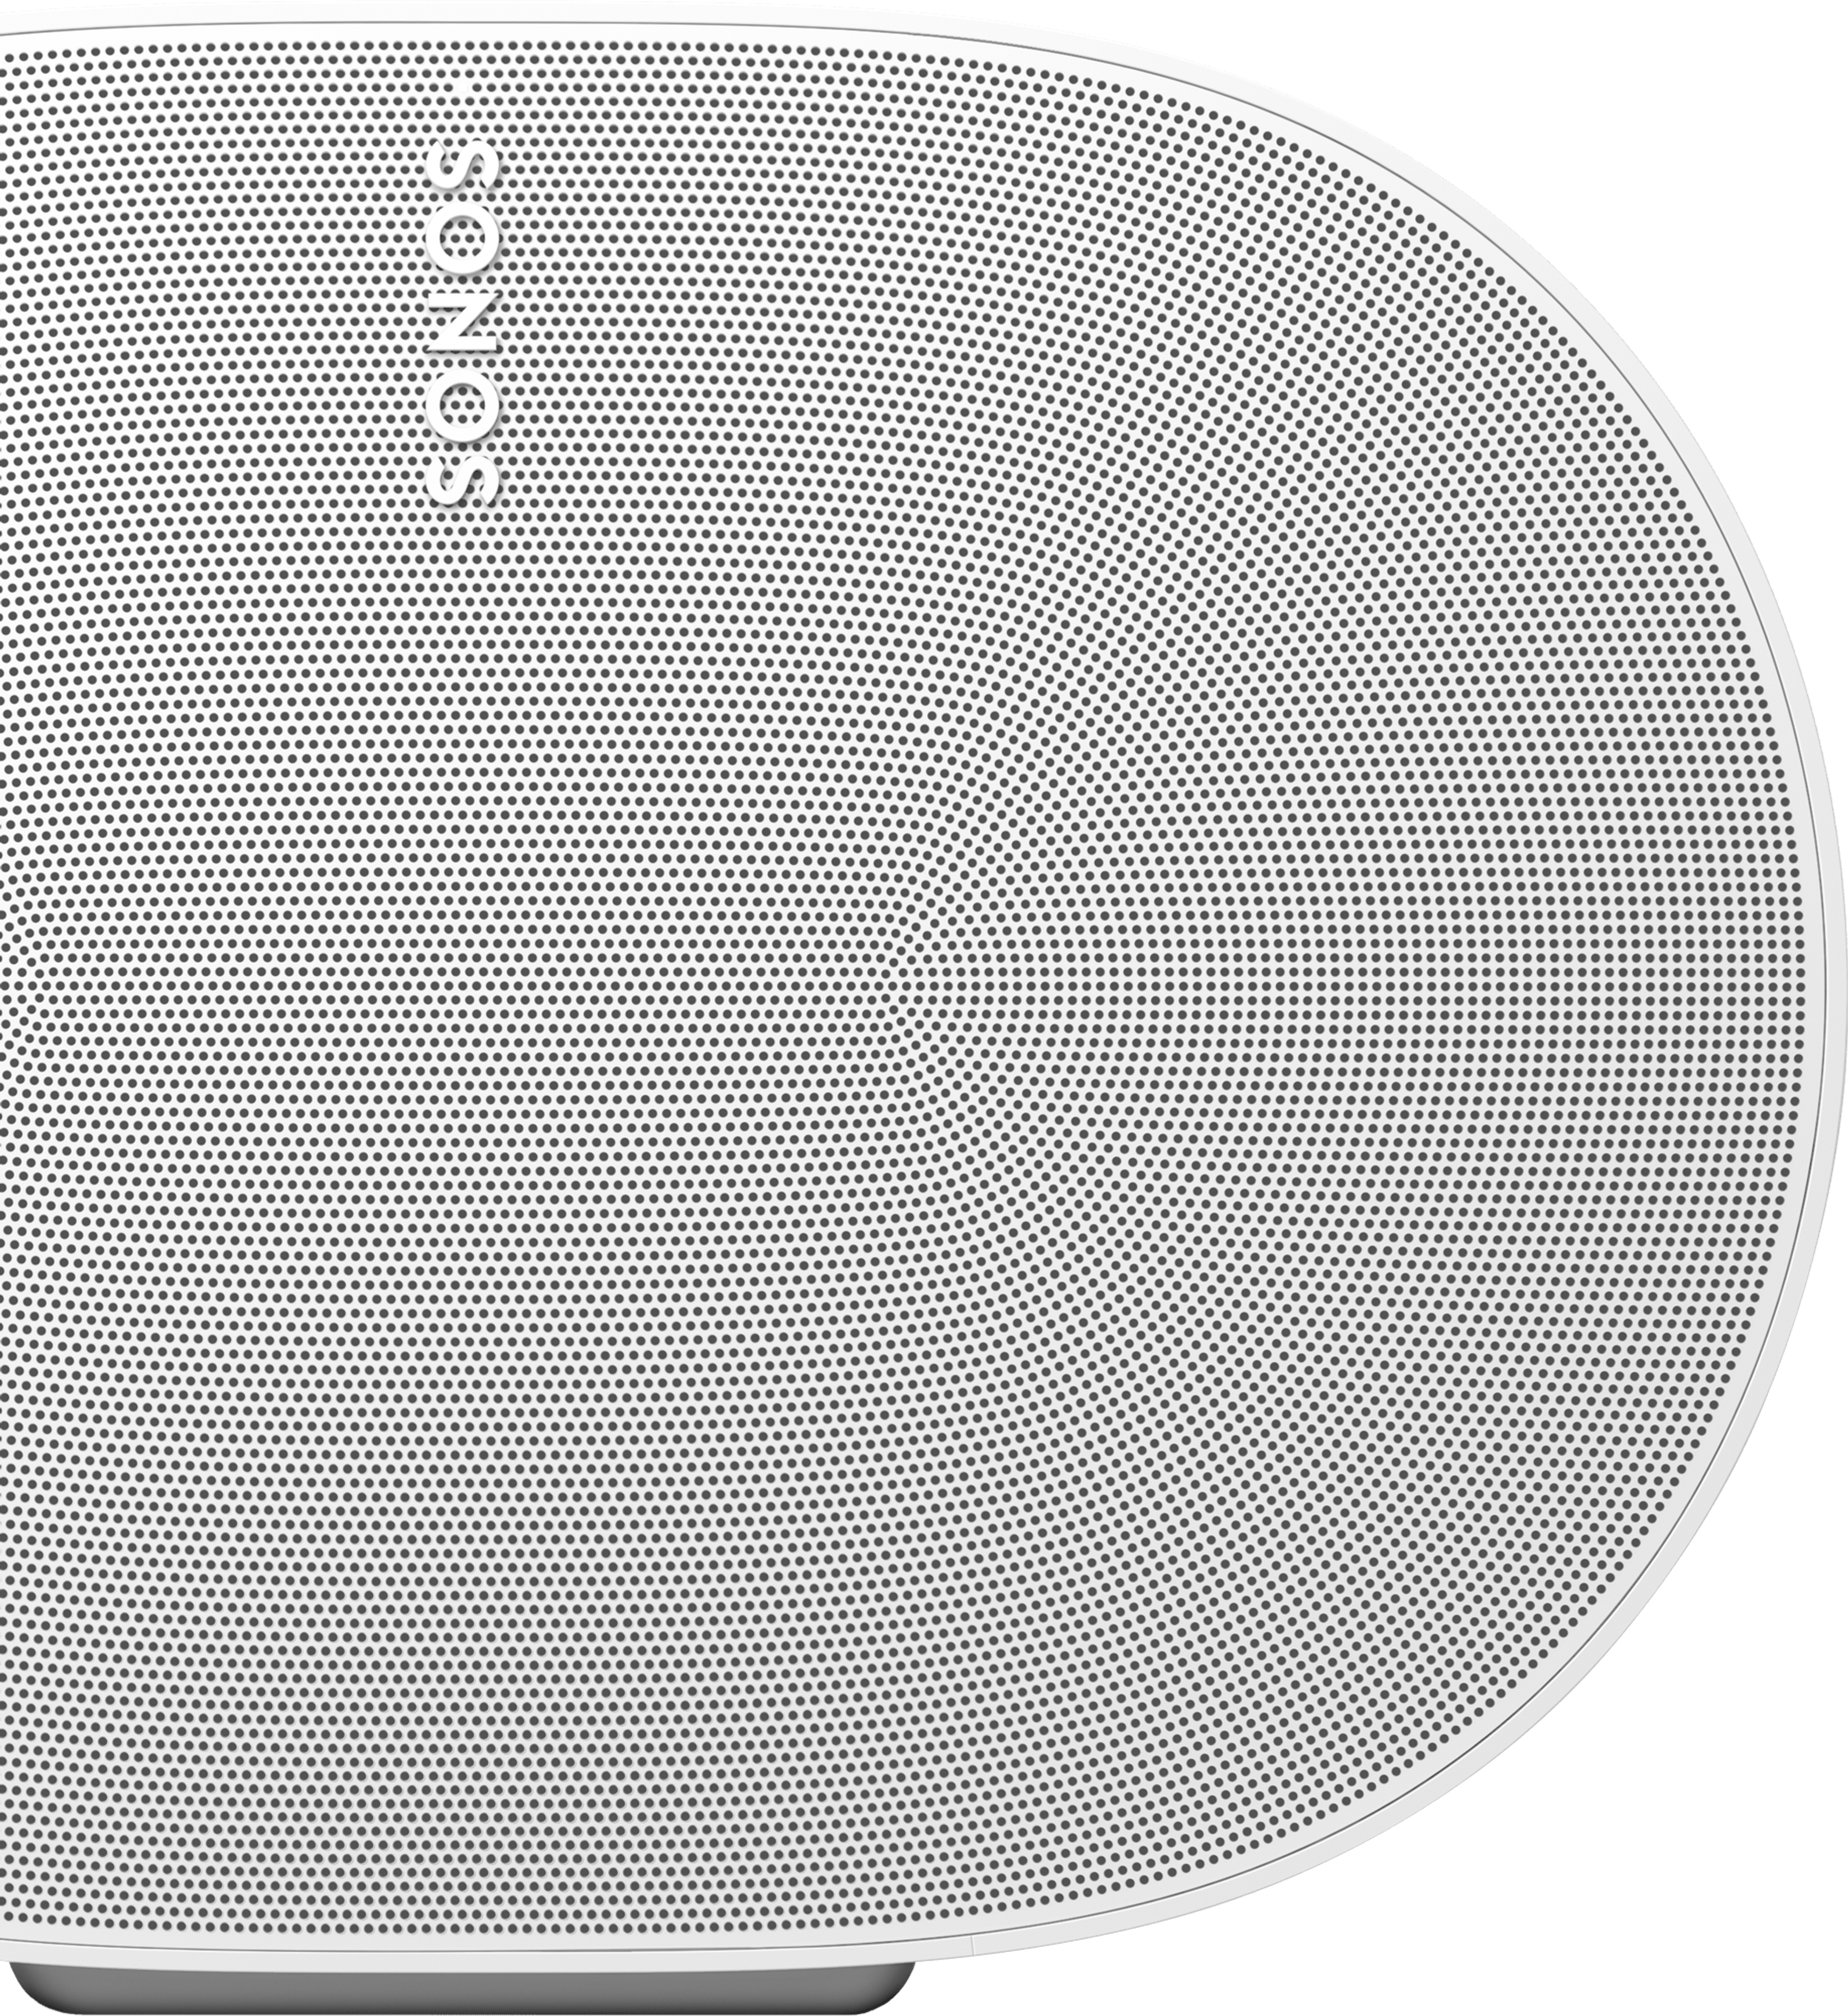 Nærbilde av forsiden av en hvit Sonos Era 300-høyttaler